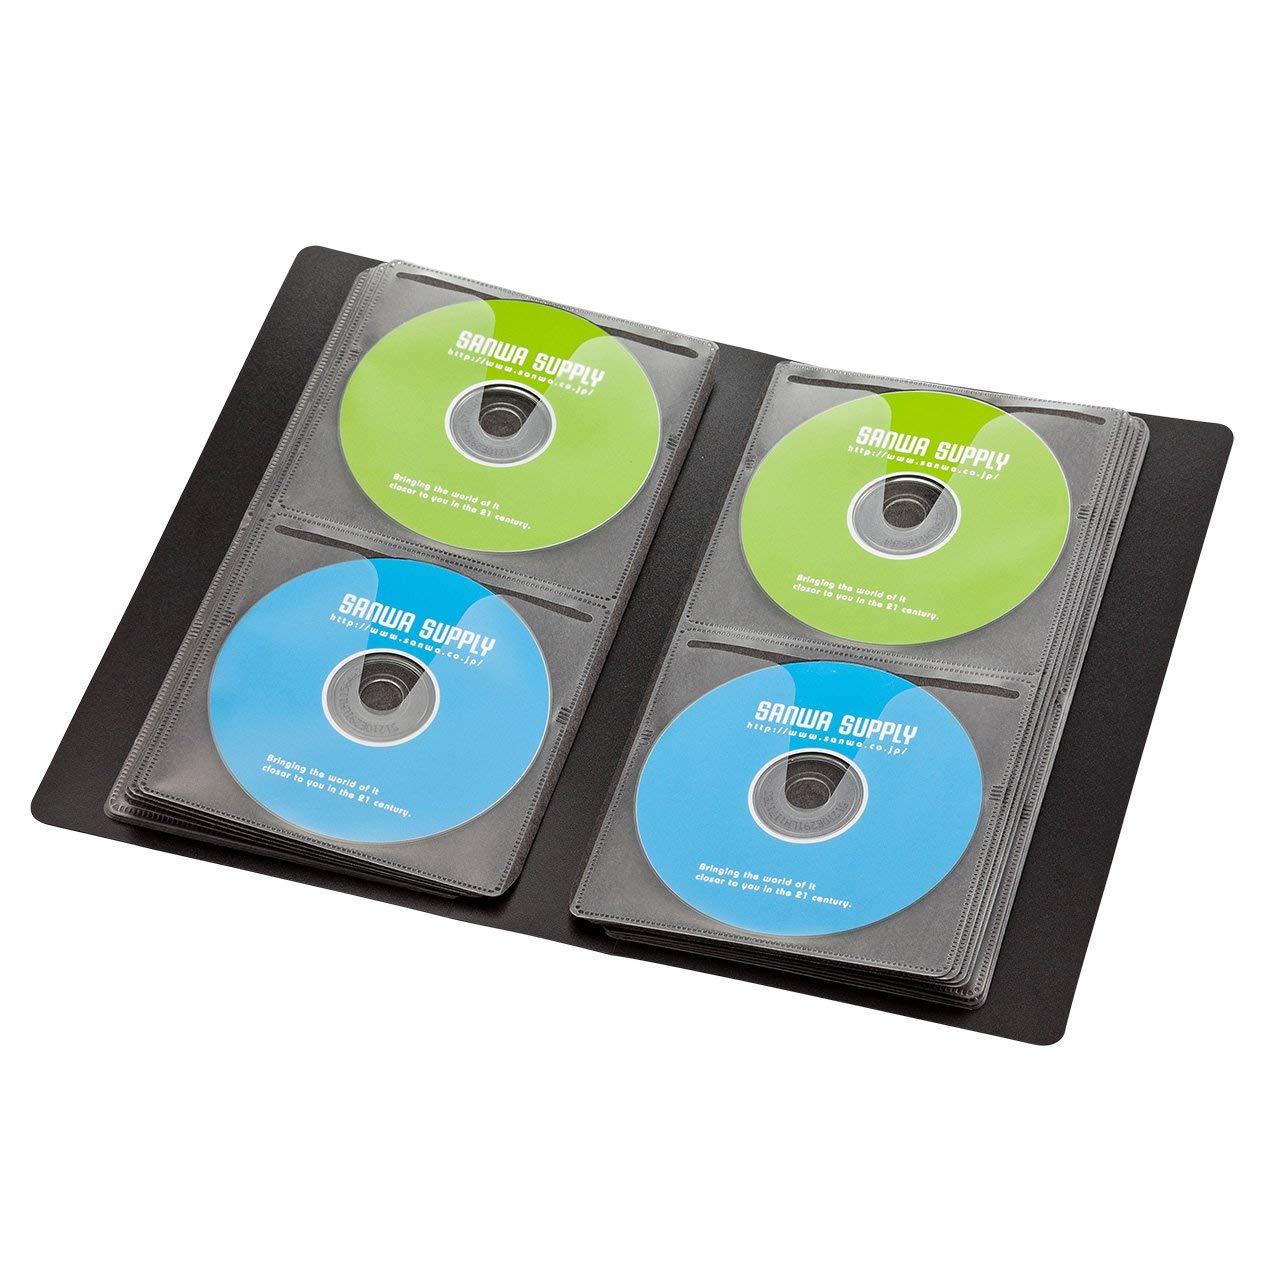 メディアケースのおすすめ10選 Cd Dvd ブルーレイを収納 Heim ハイム